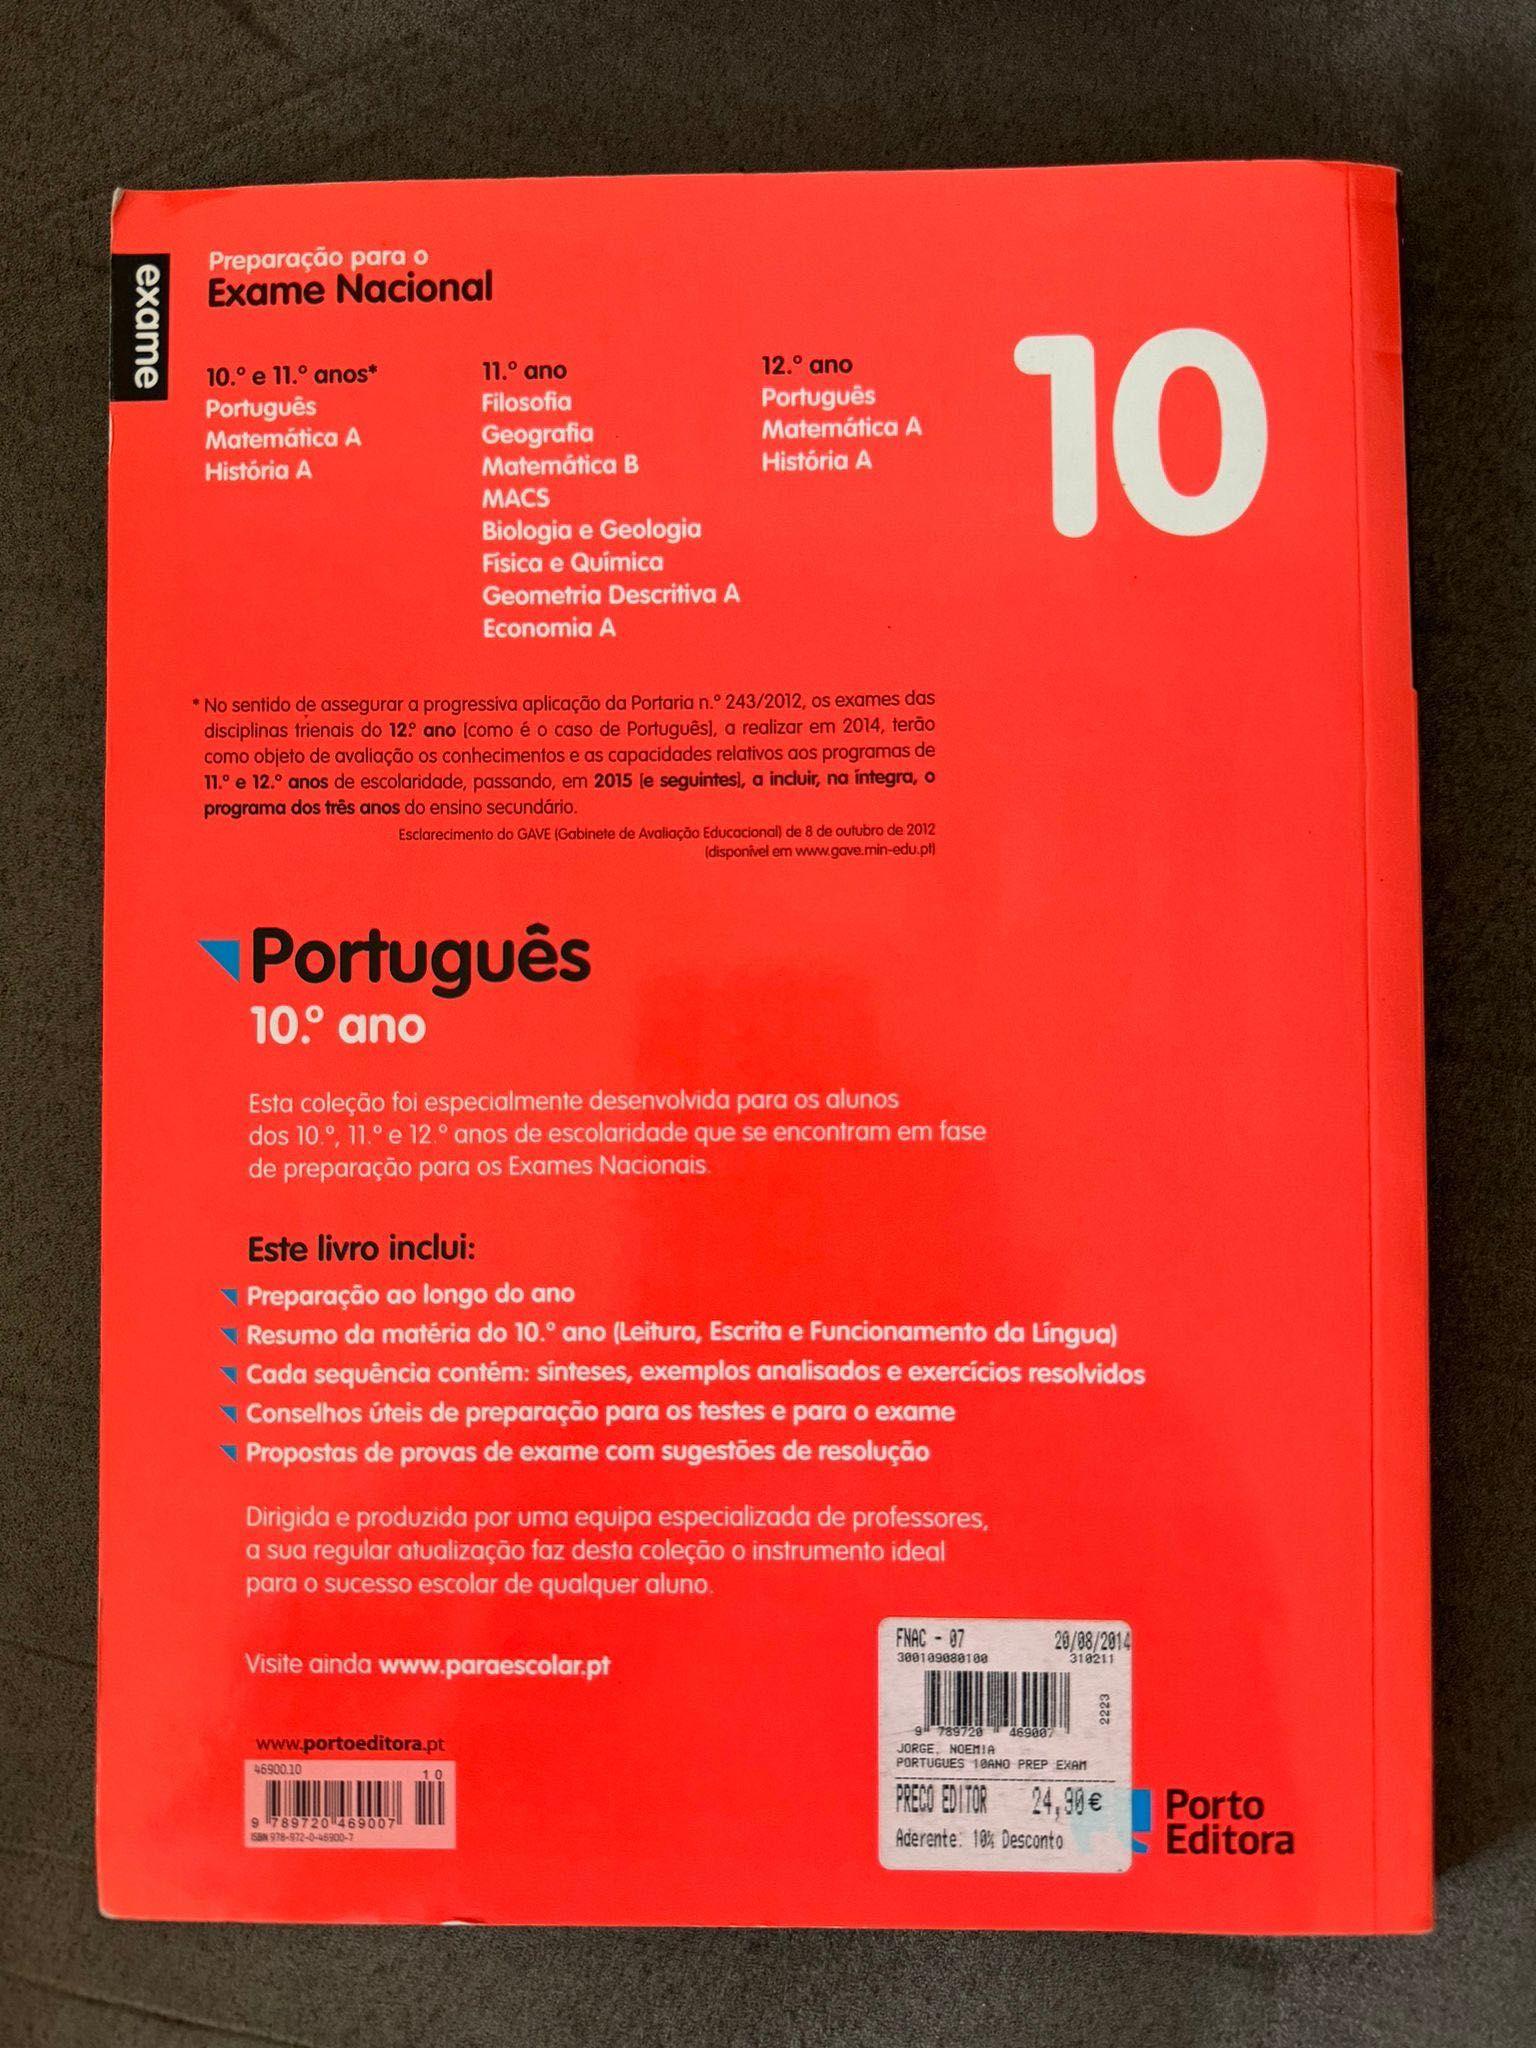 Preparação para o exame de Português